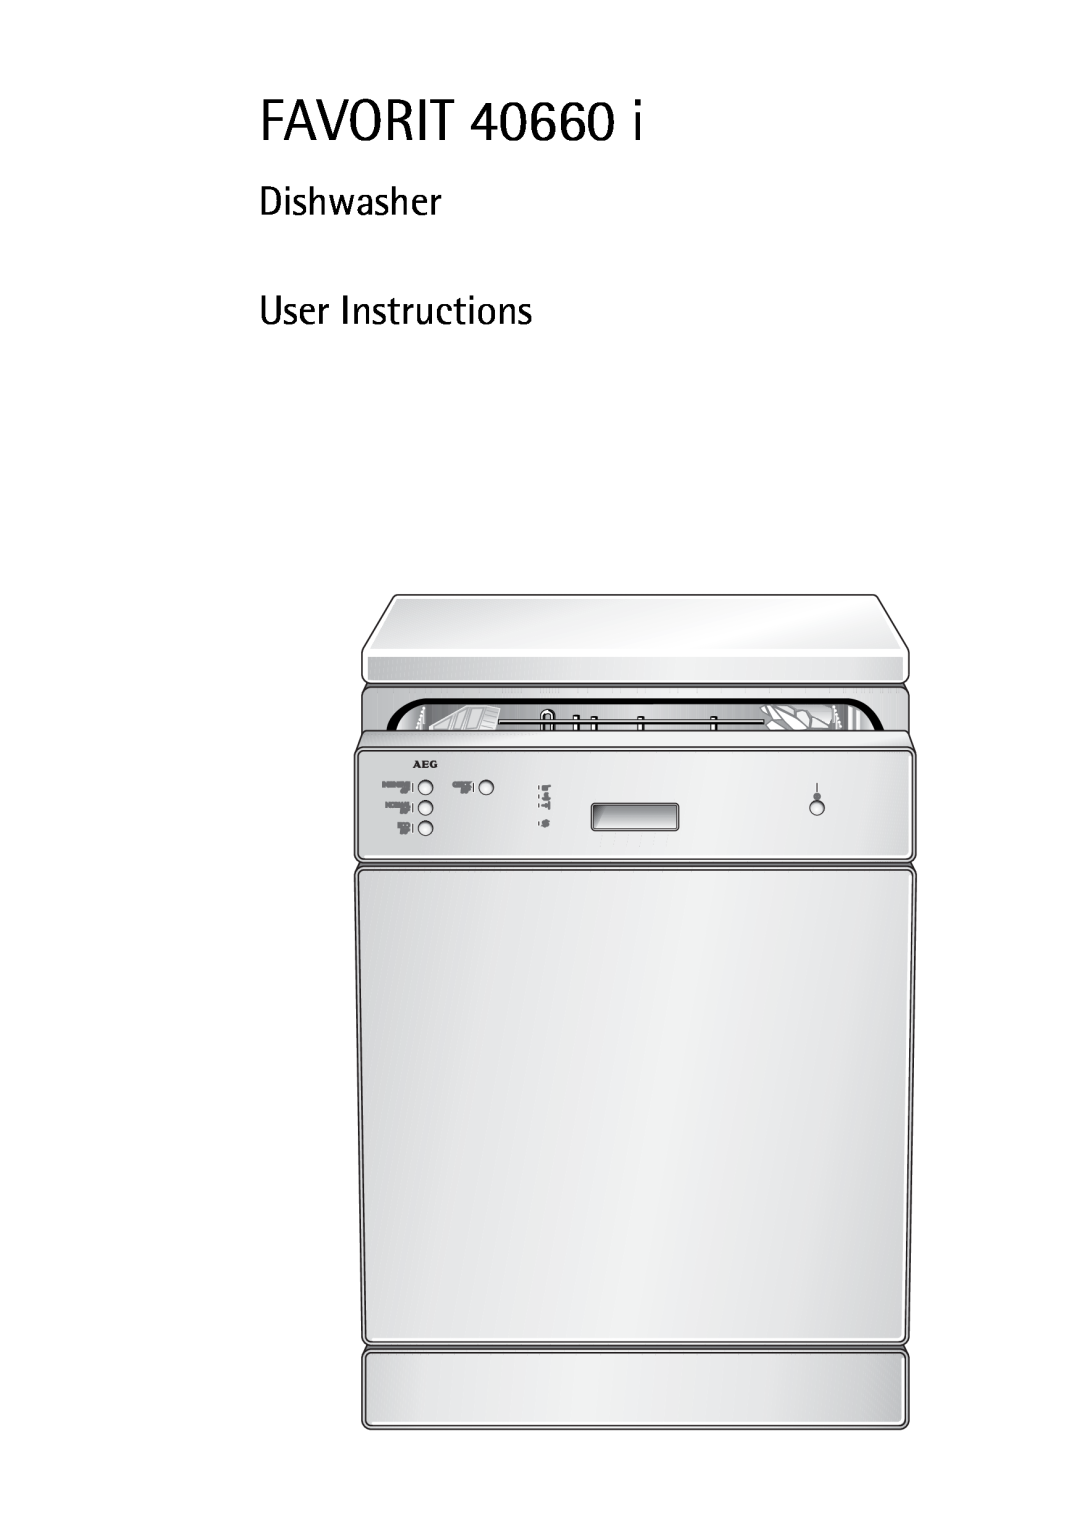 Electrolux FAVORIT 40660 i manual Favorit, Dishwasher User Instructions 